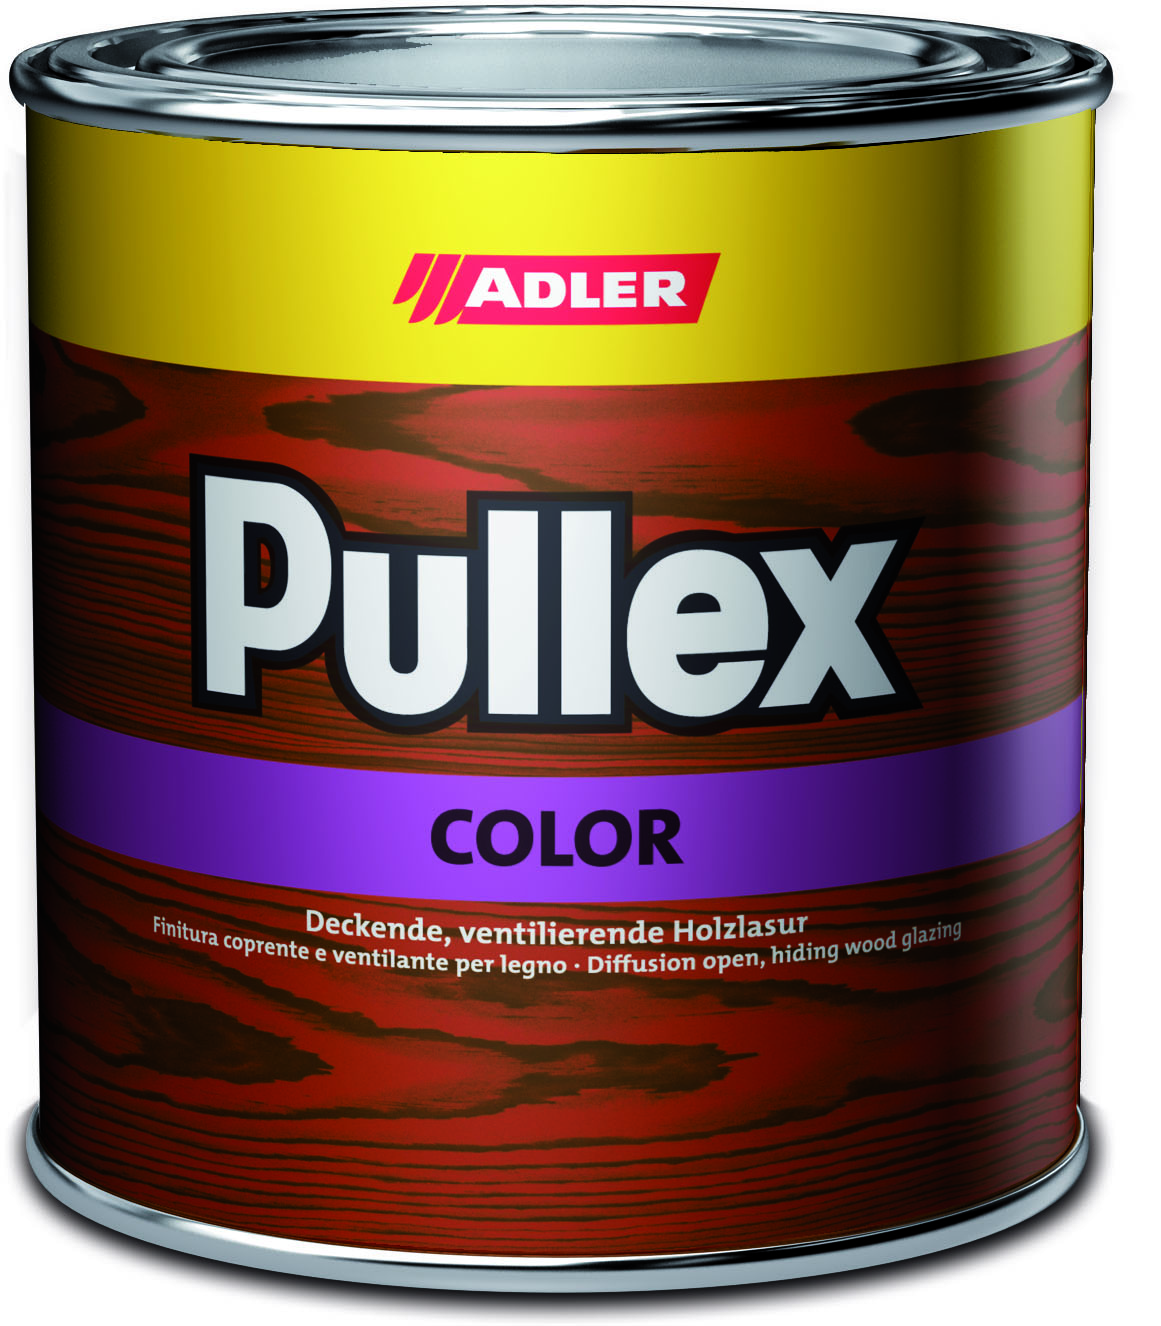 ADLER PULLEX COLOR - Ochranná farba na drevo do exteriéru 750 ml ral 1002 - piesková